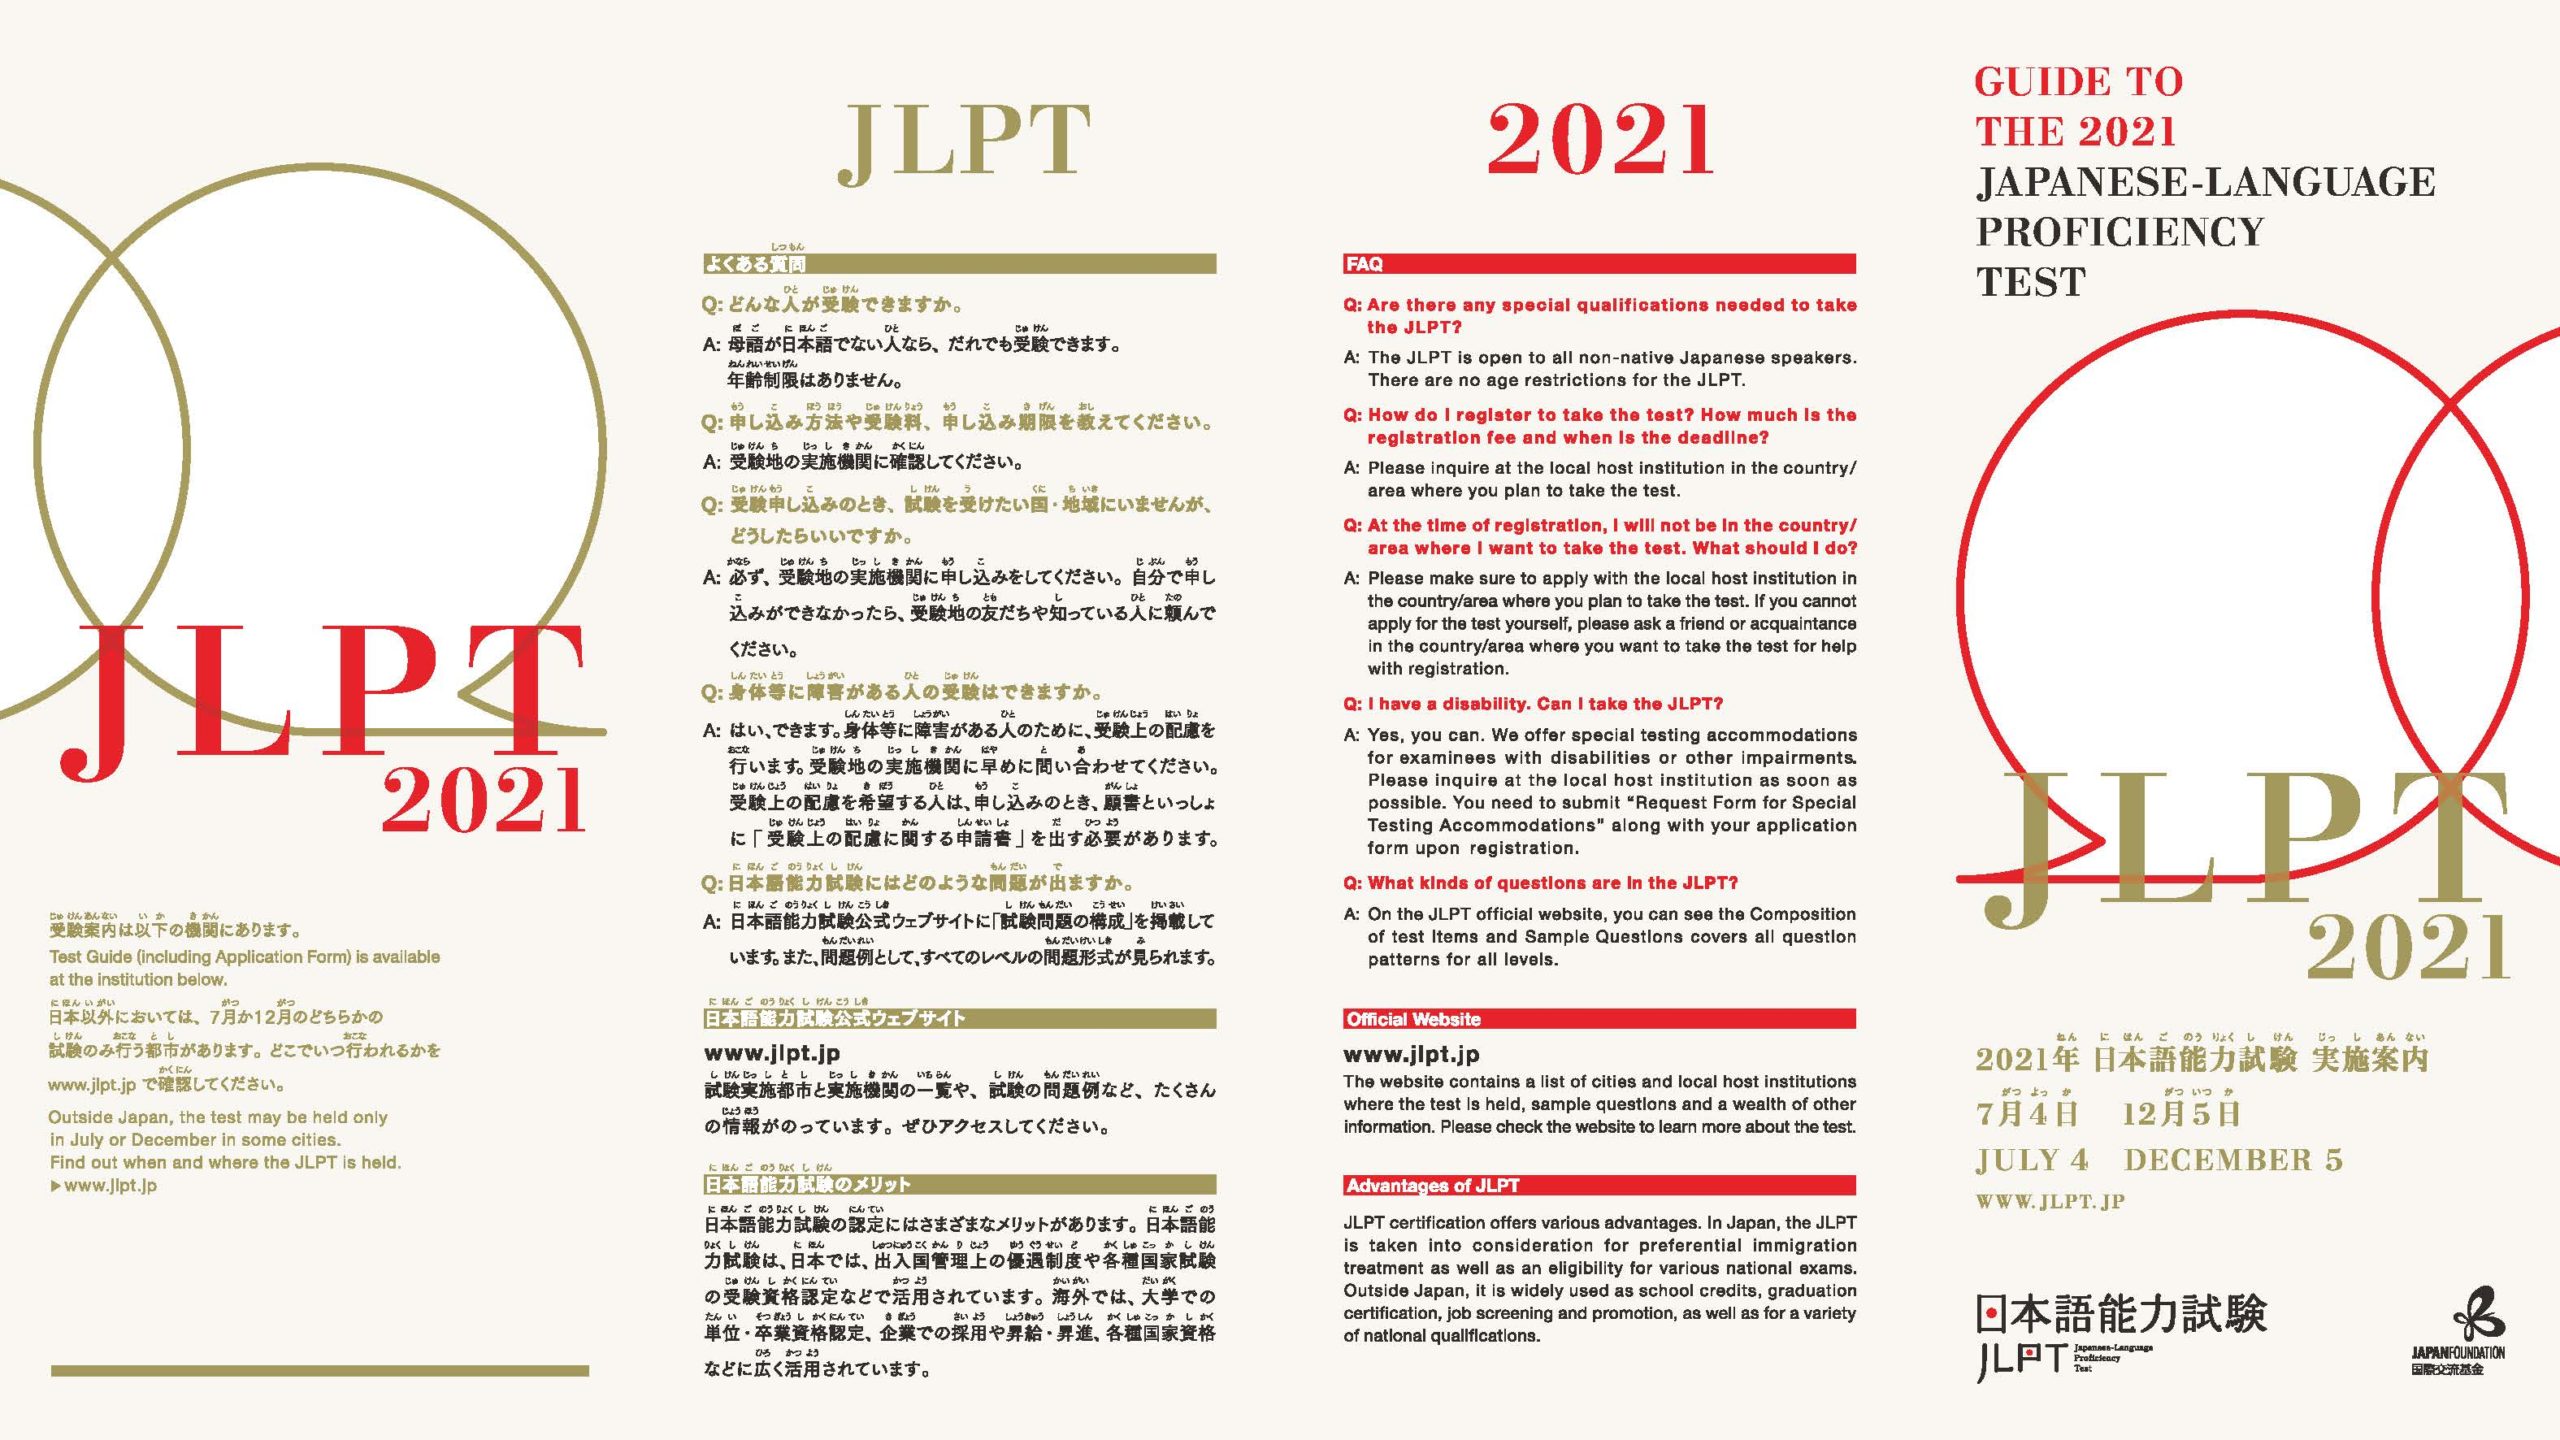 外国人の日本語能力を測定するには「日本語能力試験（略称：JLPT）がお勧め